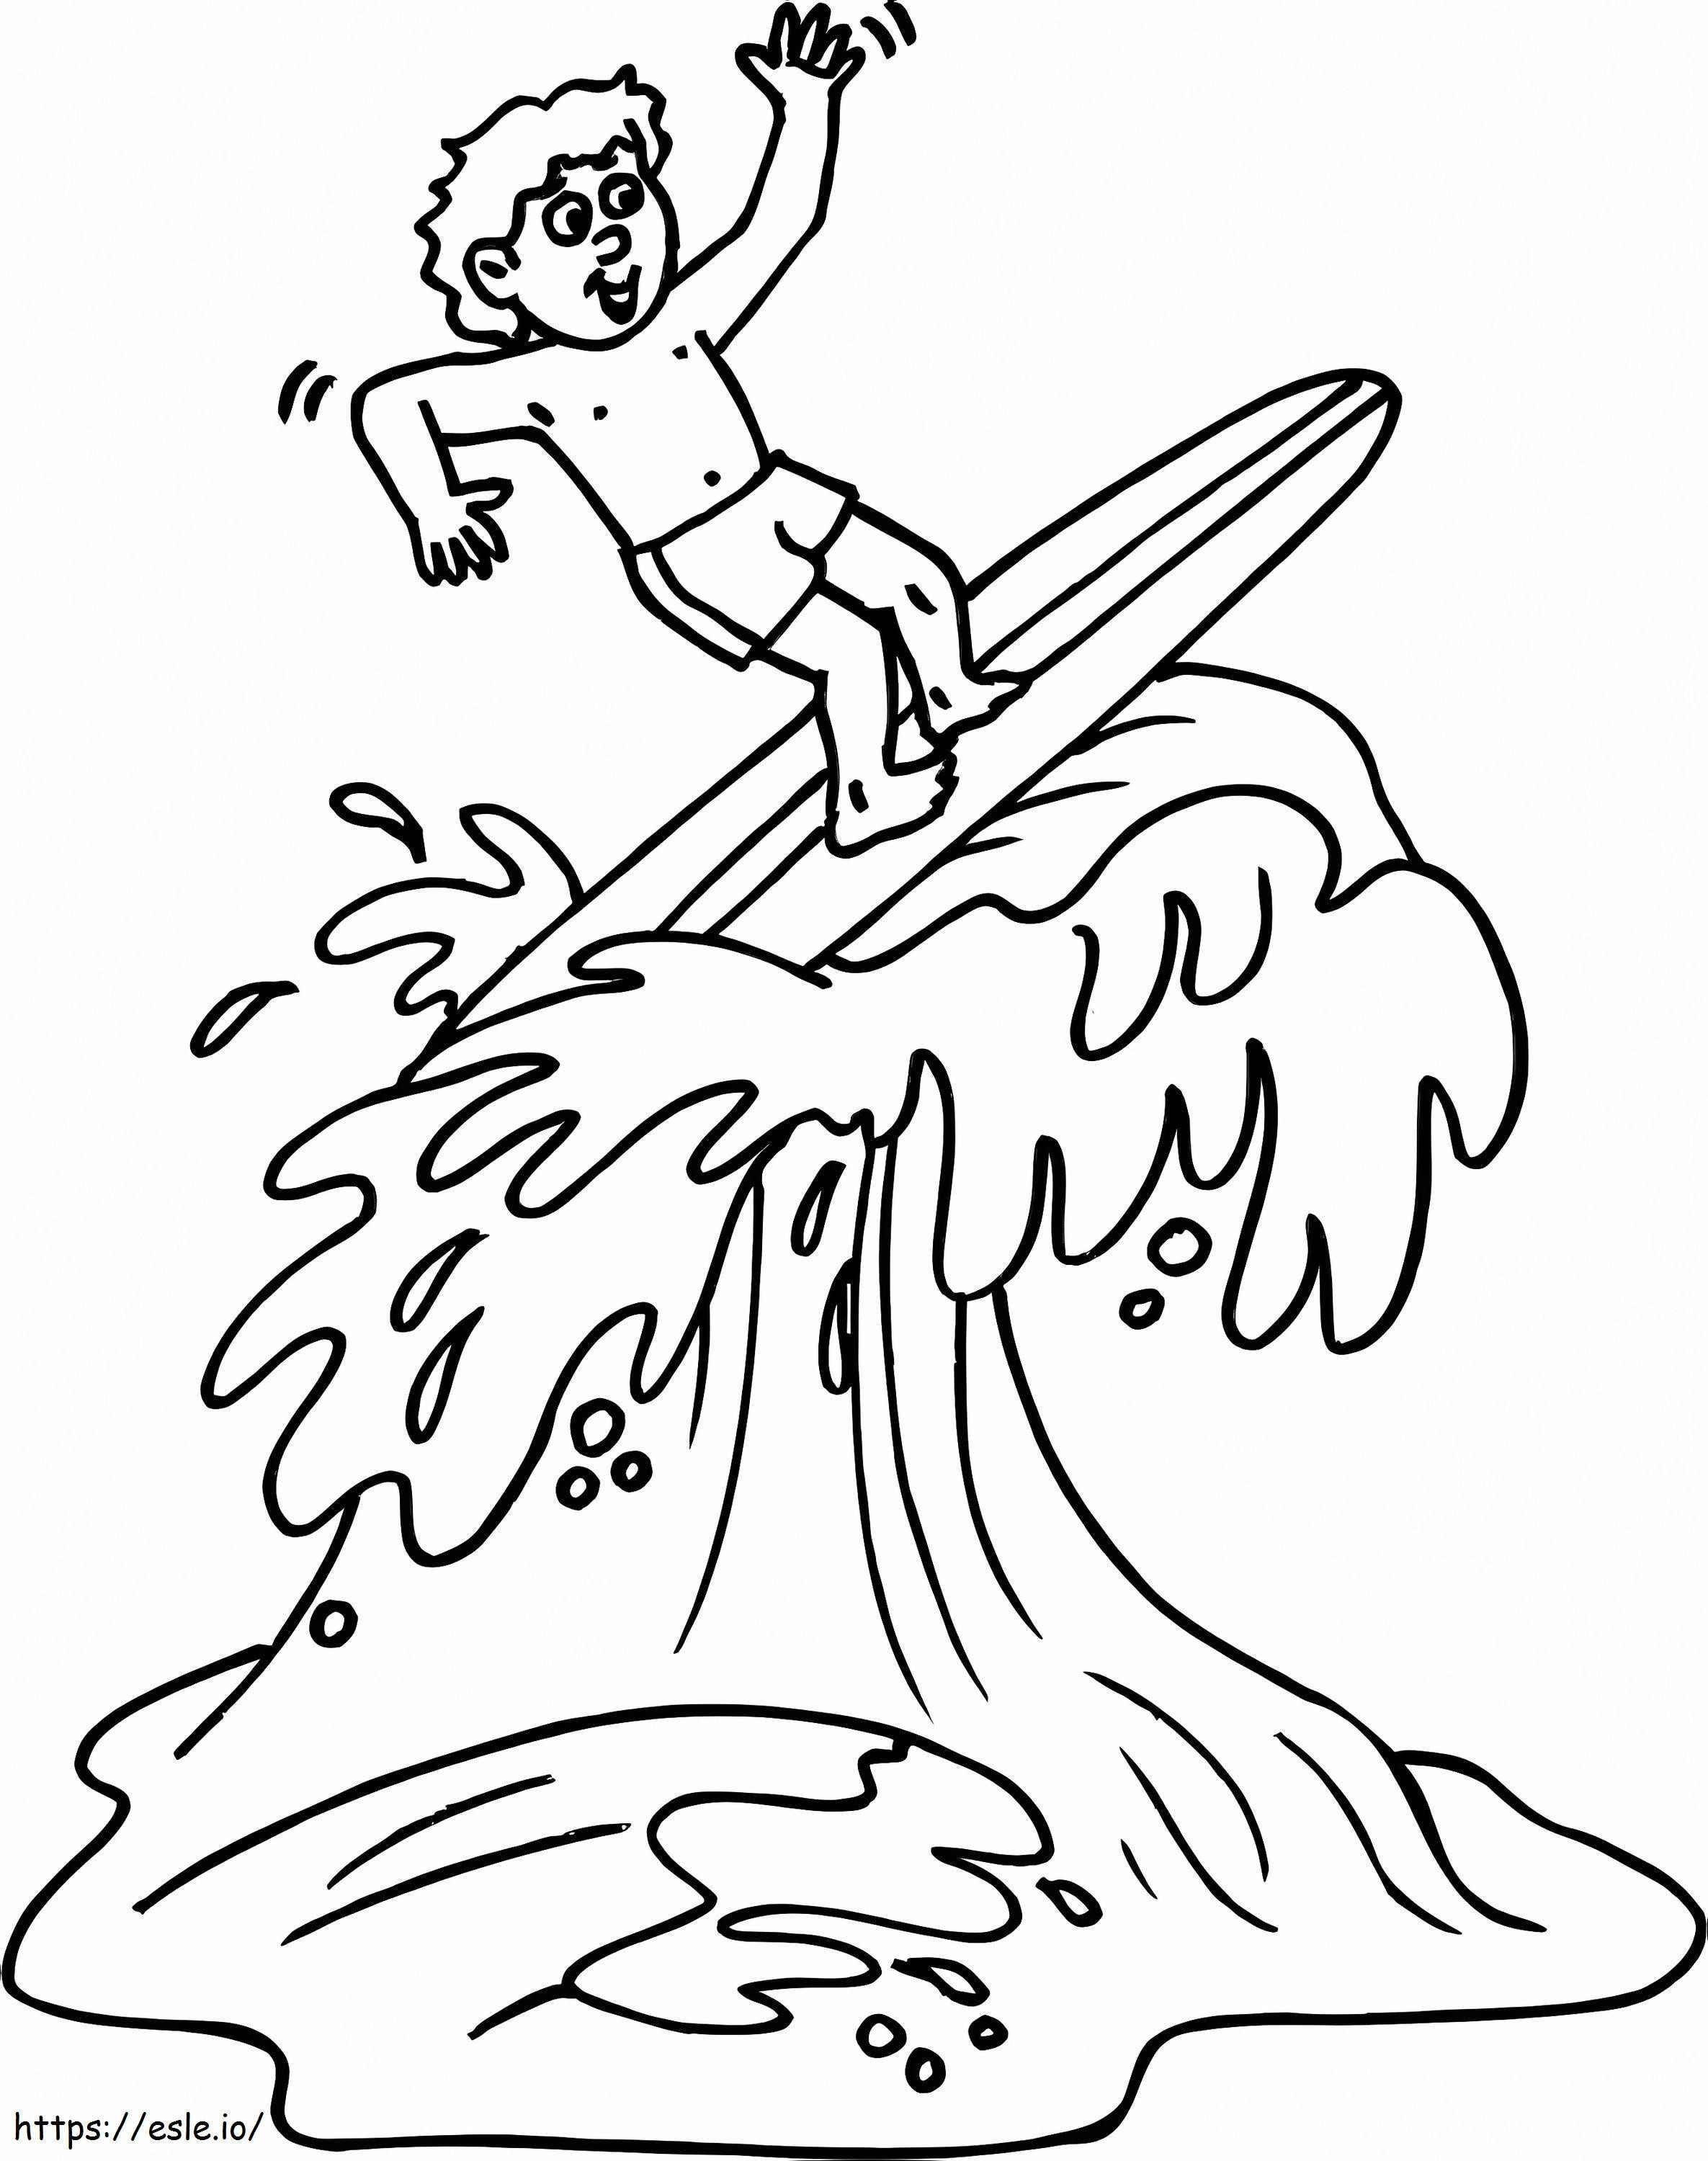 Un băiat care face surf de colorat